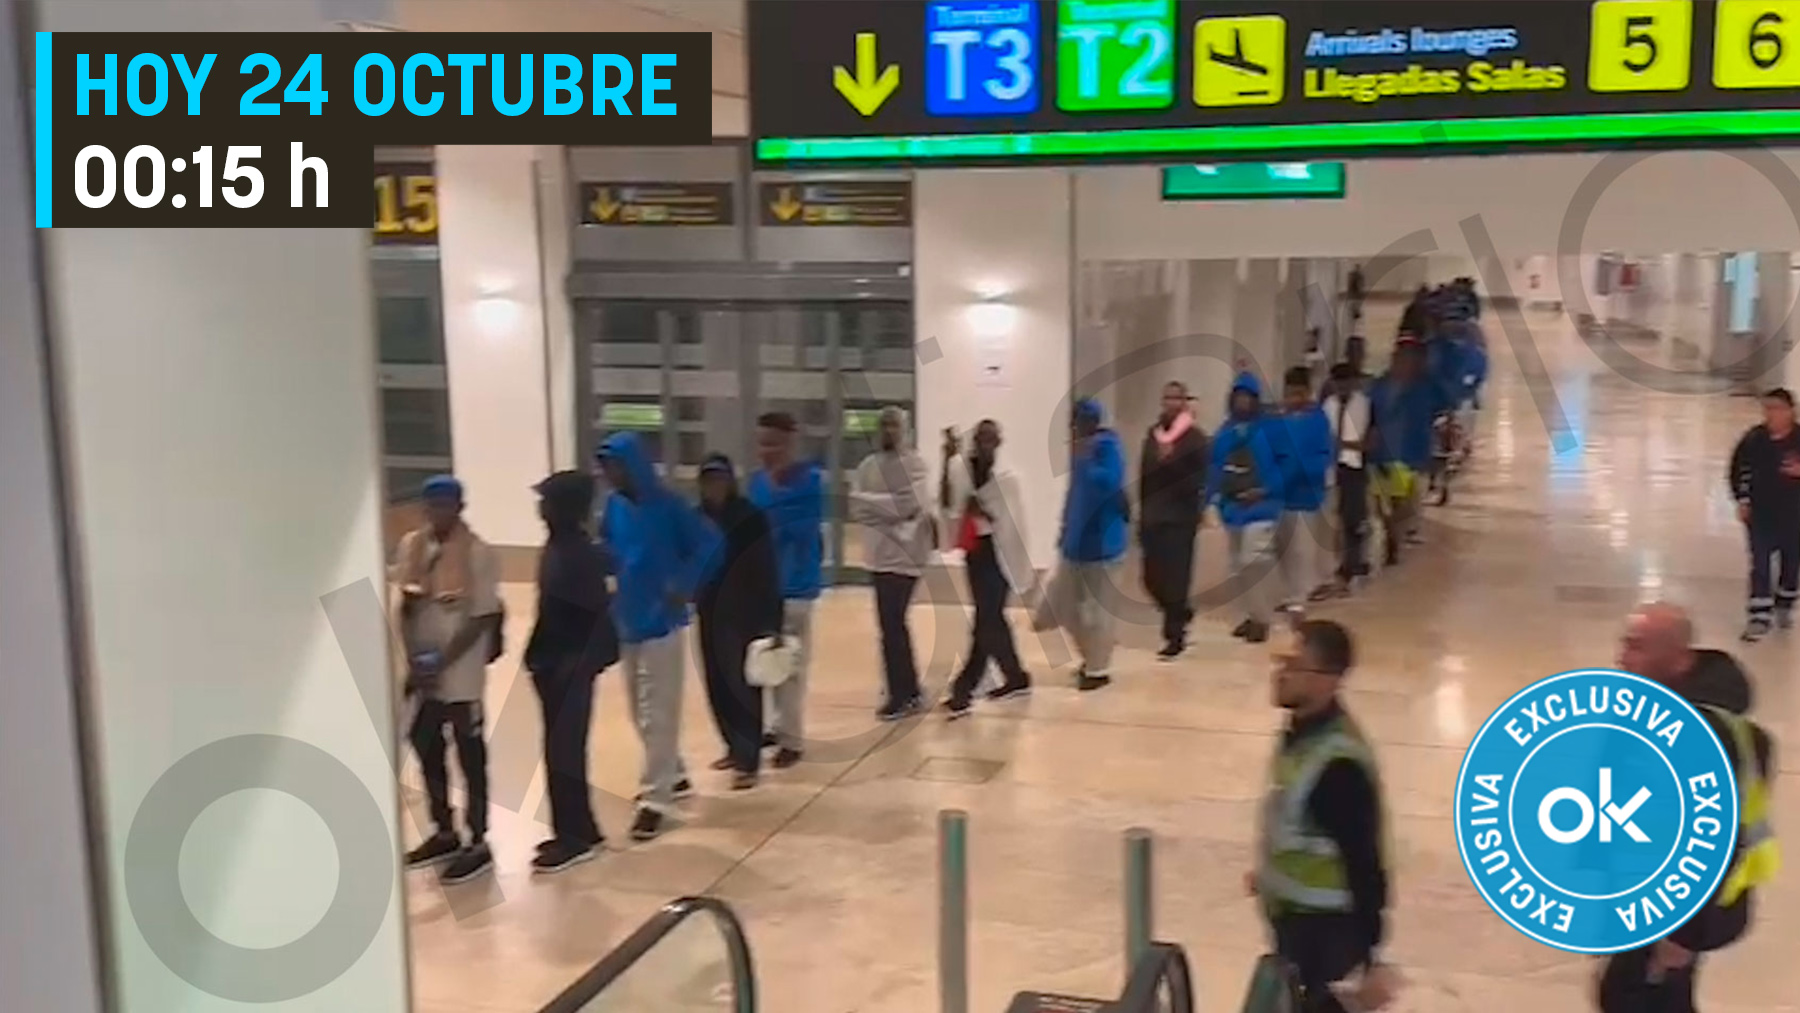 Llegada de inmigrantes ilegales al aeropuerto de Barajas trasladados en avión desde Tenerife.